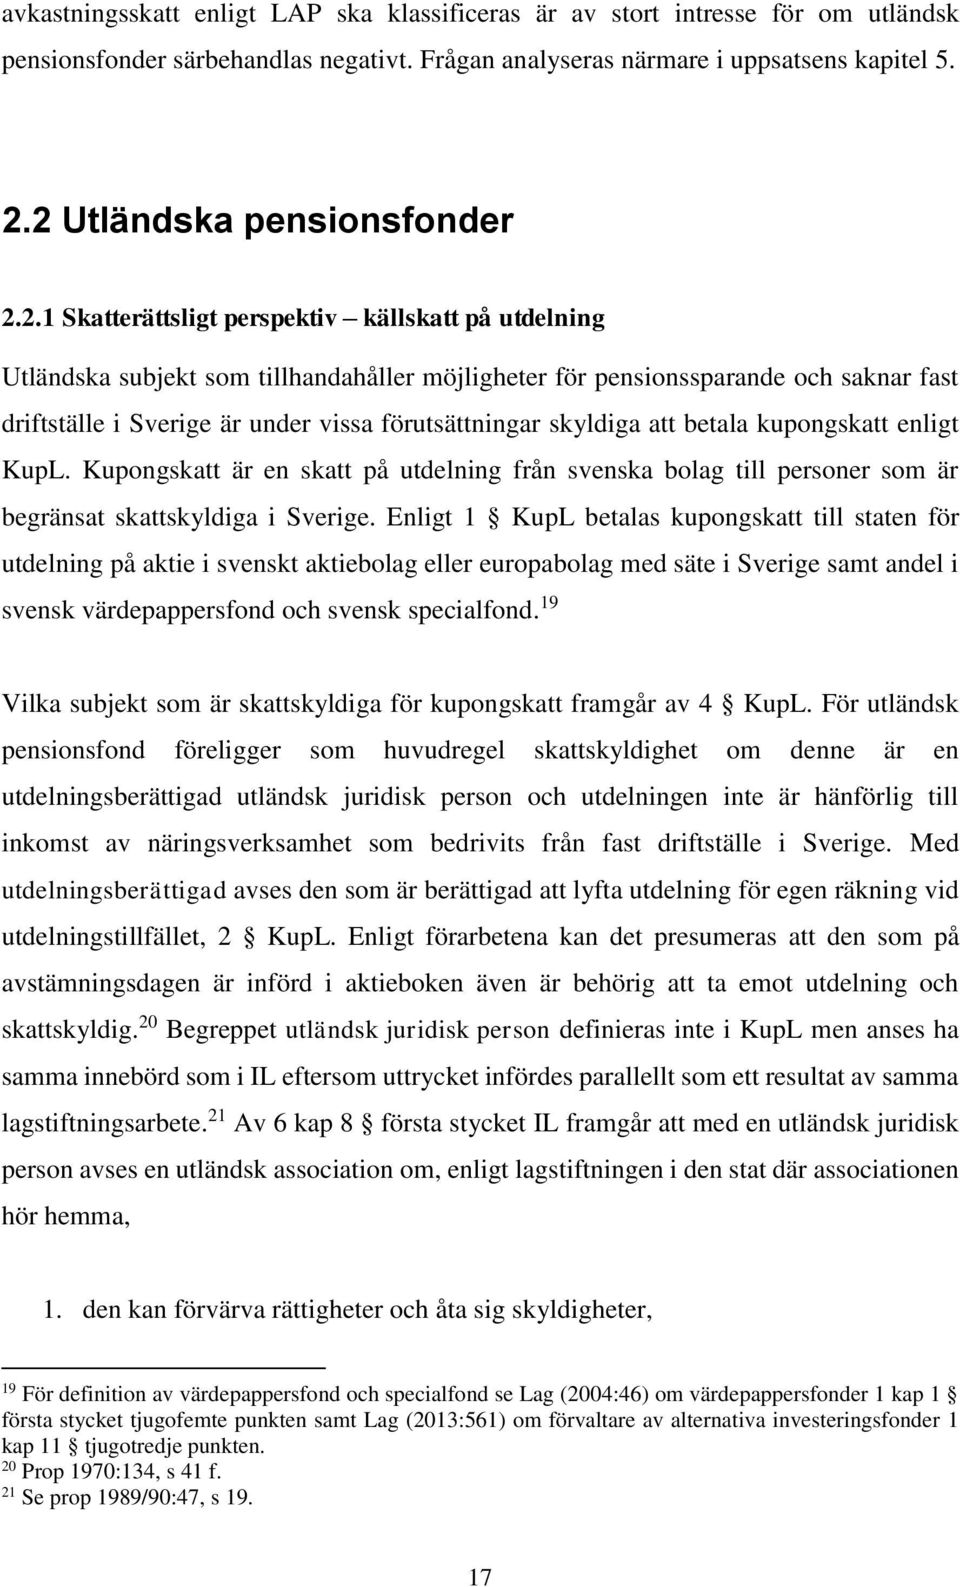 under vissa förutsättningar skyldiga att betala kupongskatt enligt KupL. Kupongskatt är en skatt på utdelning från svenska bolag till personer som är begränsat skattskyldiga i Sverige.